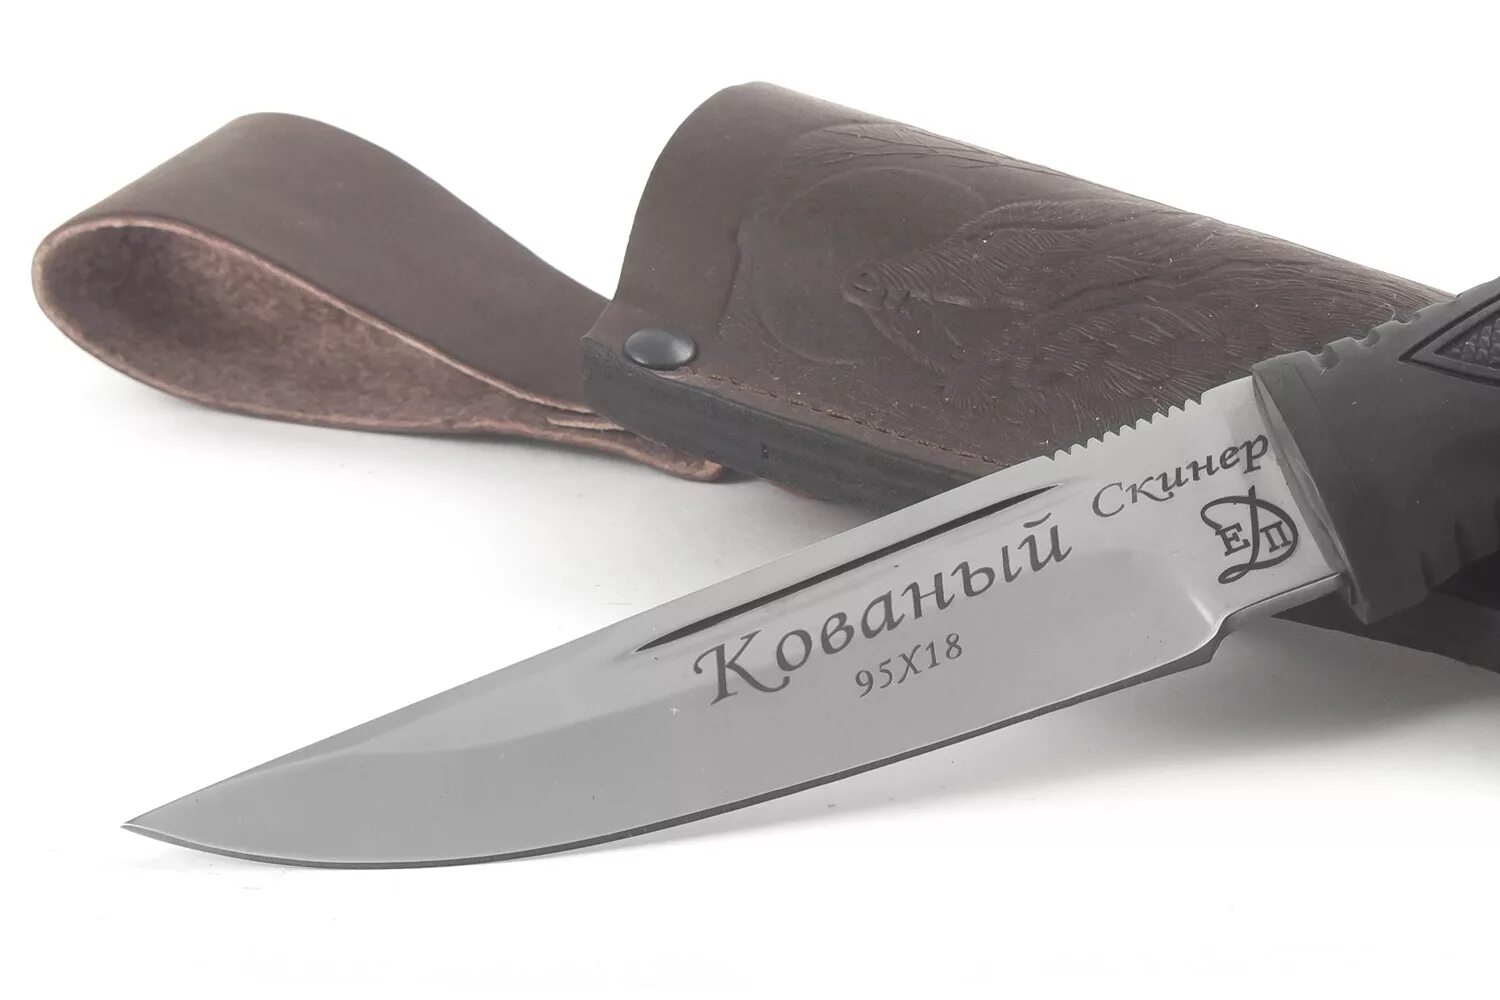 Купить нержавеющий нож. Сталь ножевая в038. Нож Ch 3533 сталь. Нож складной МЕДТЕХ сталь 95х18. Сталь ножа 011а.